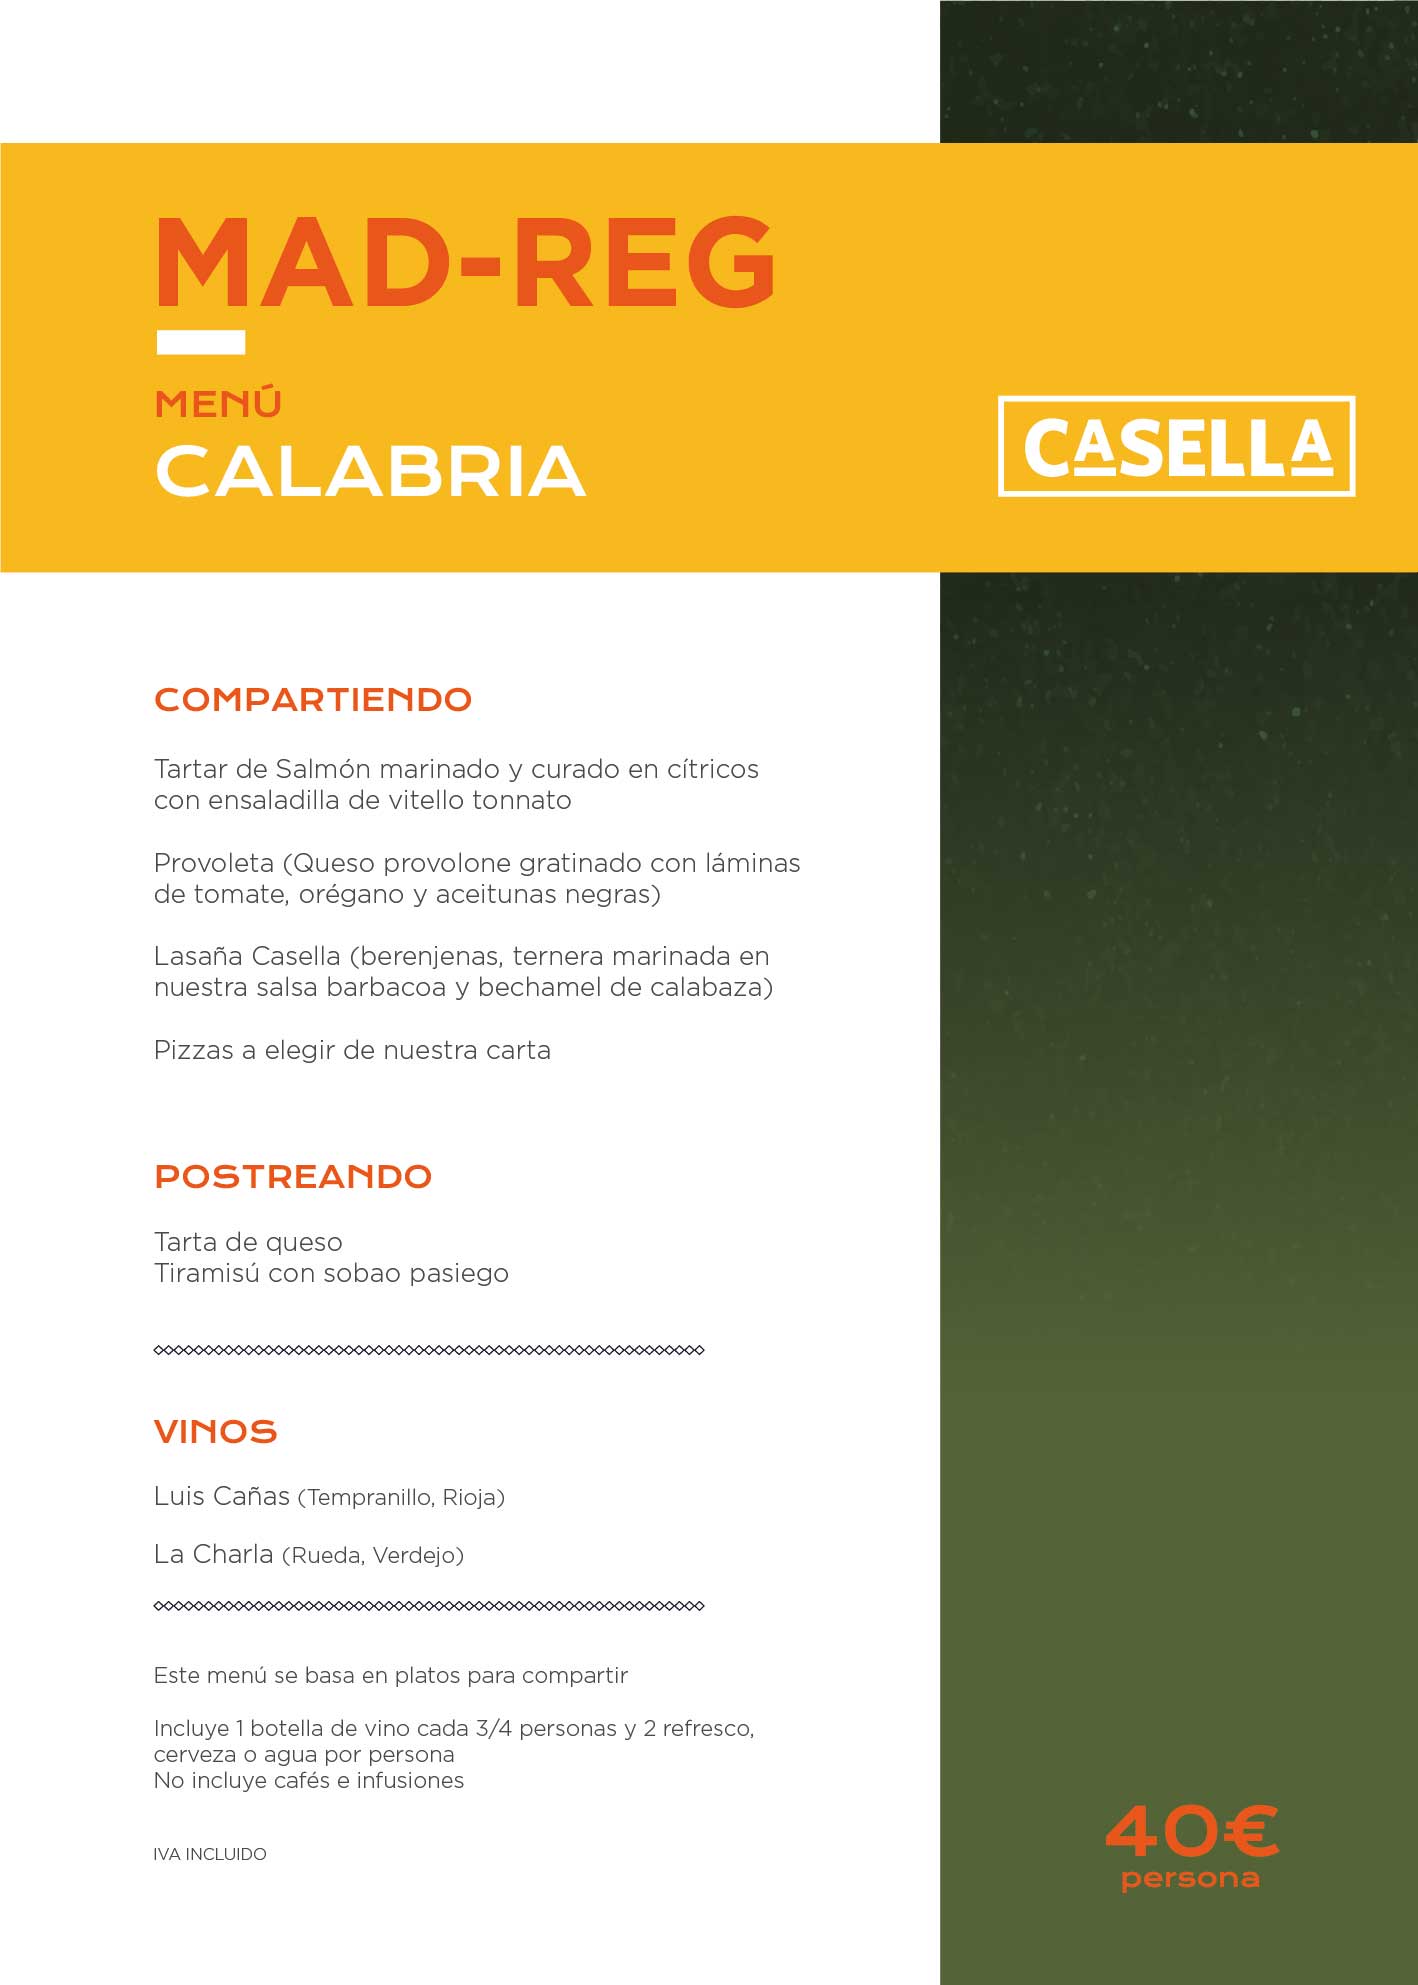 casella menu 2